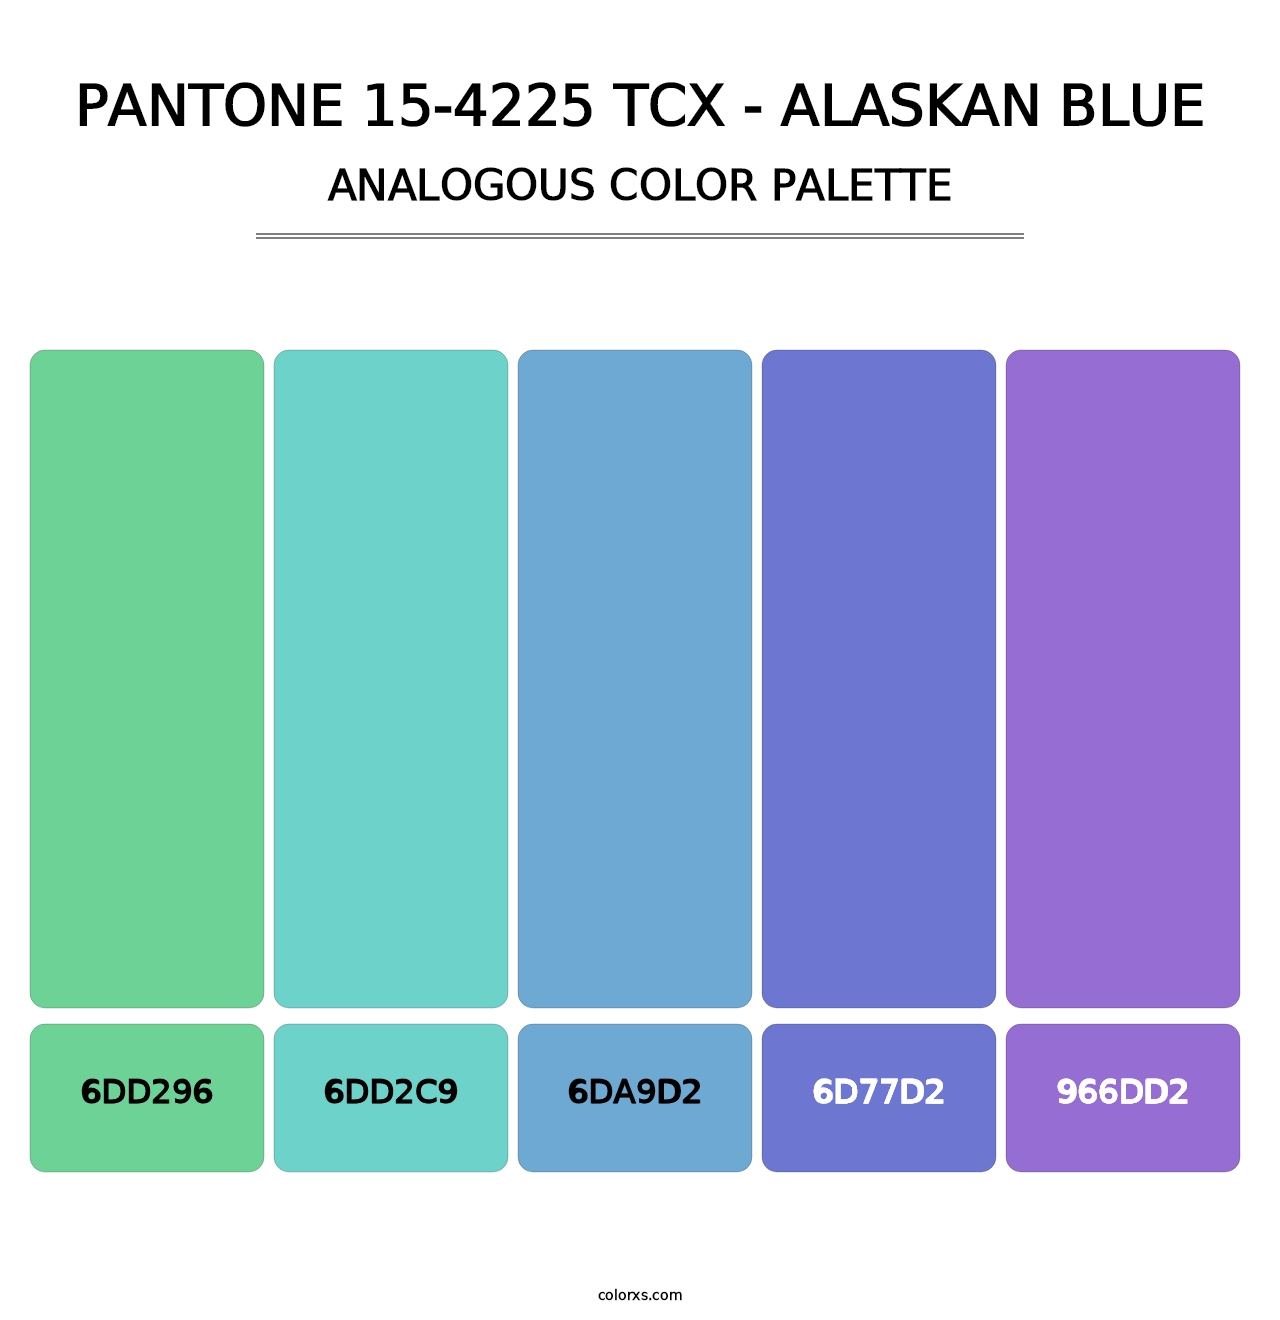 PANTONE 15-4225 TCX - Alaskan Blue - Analogous Color Palette